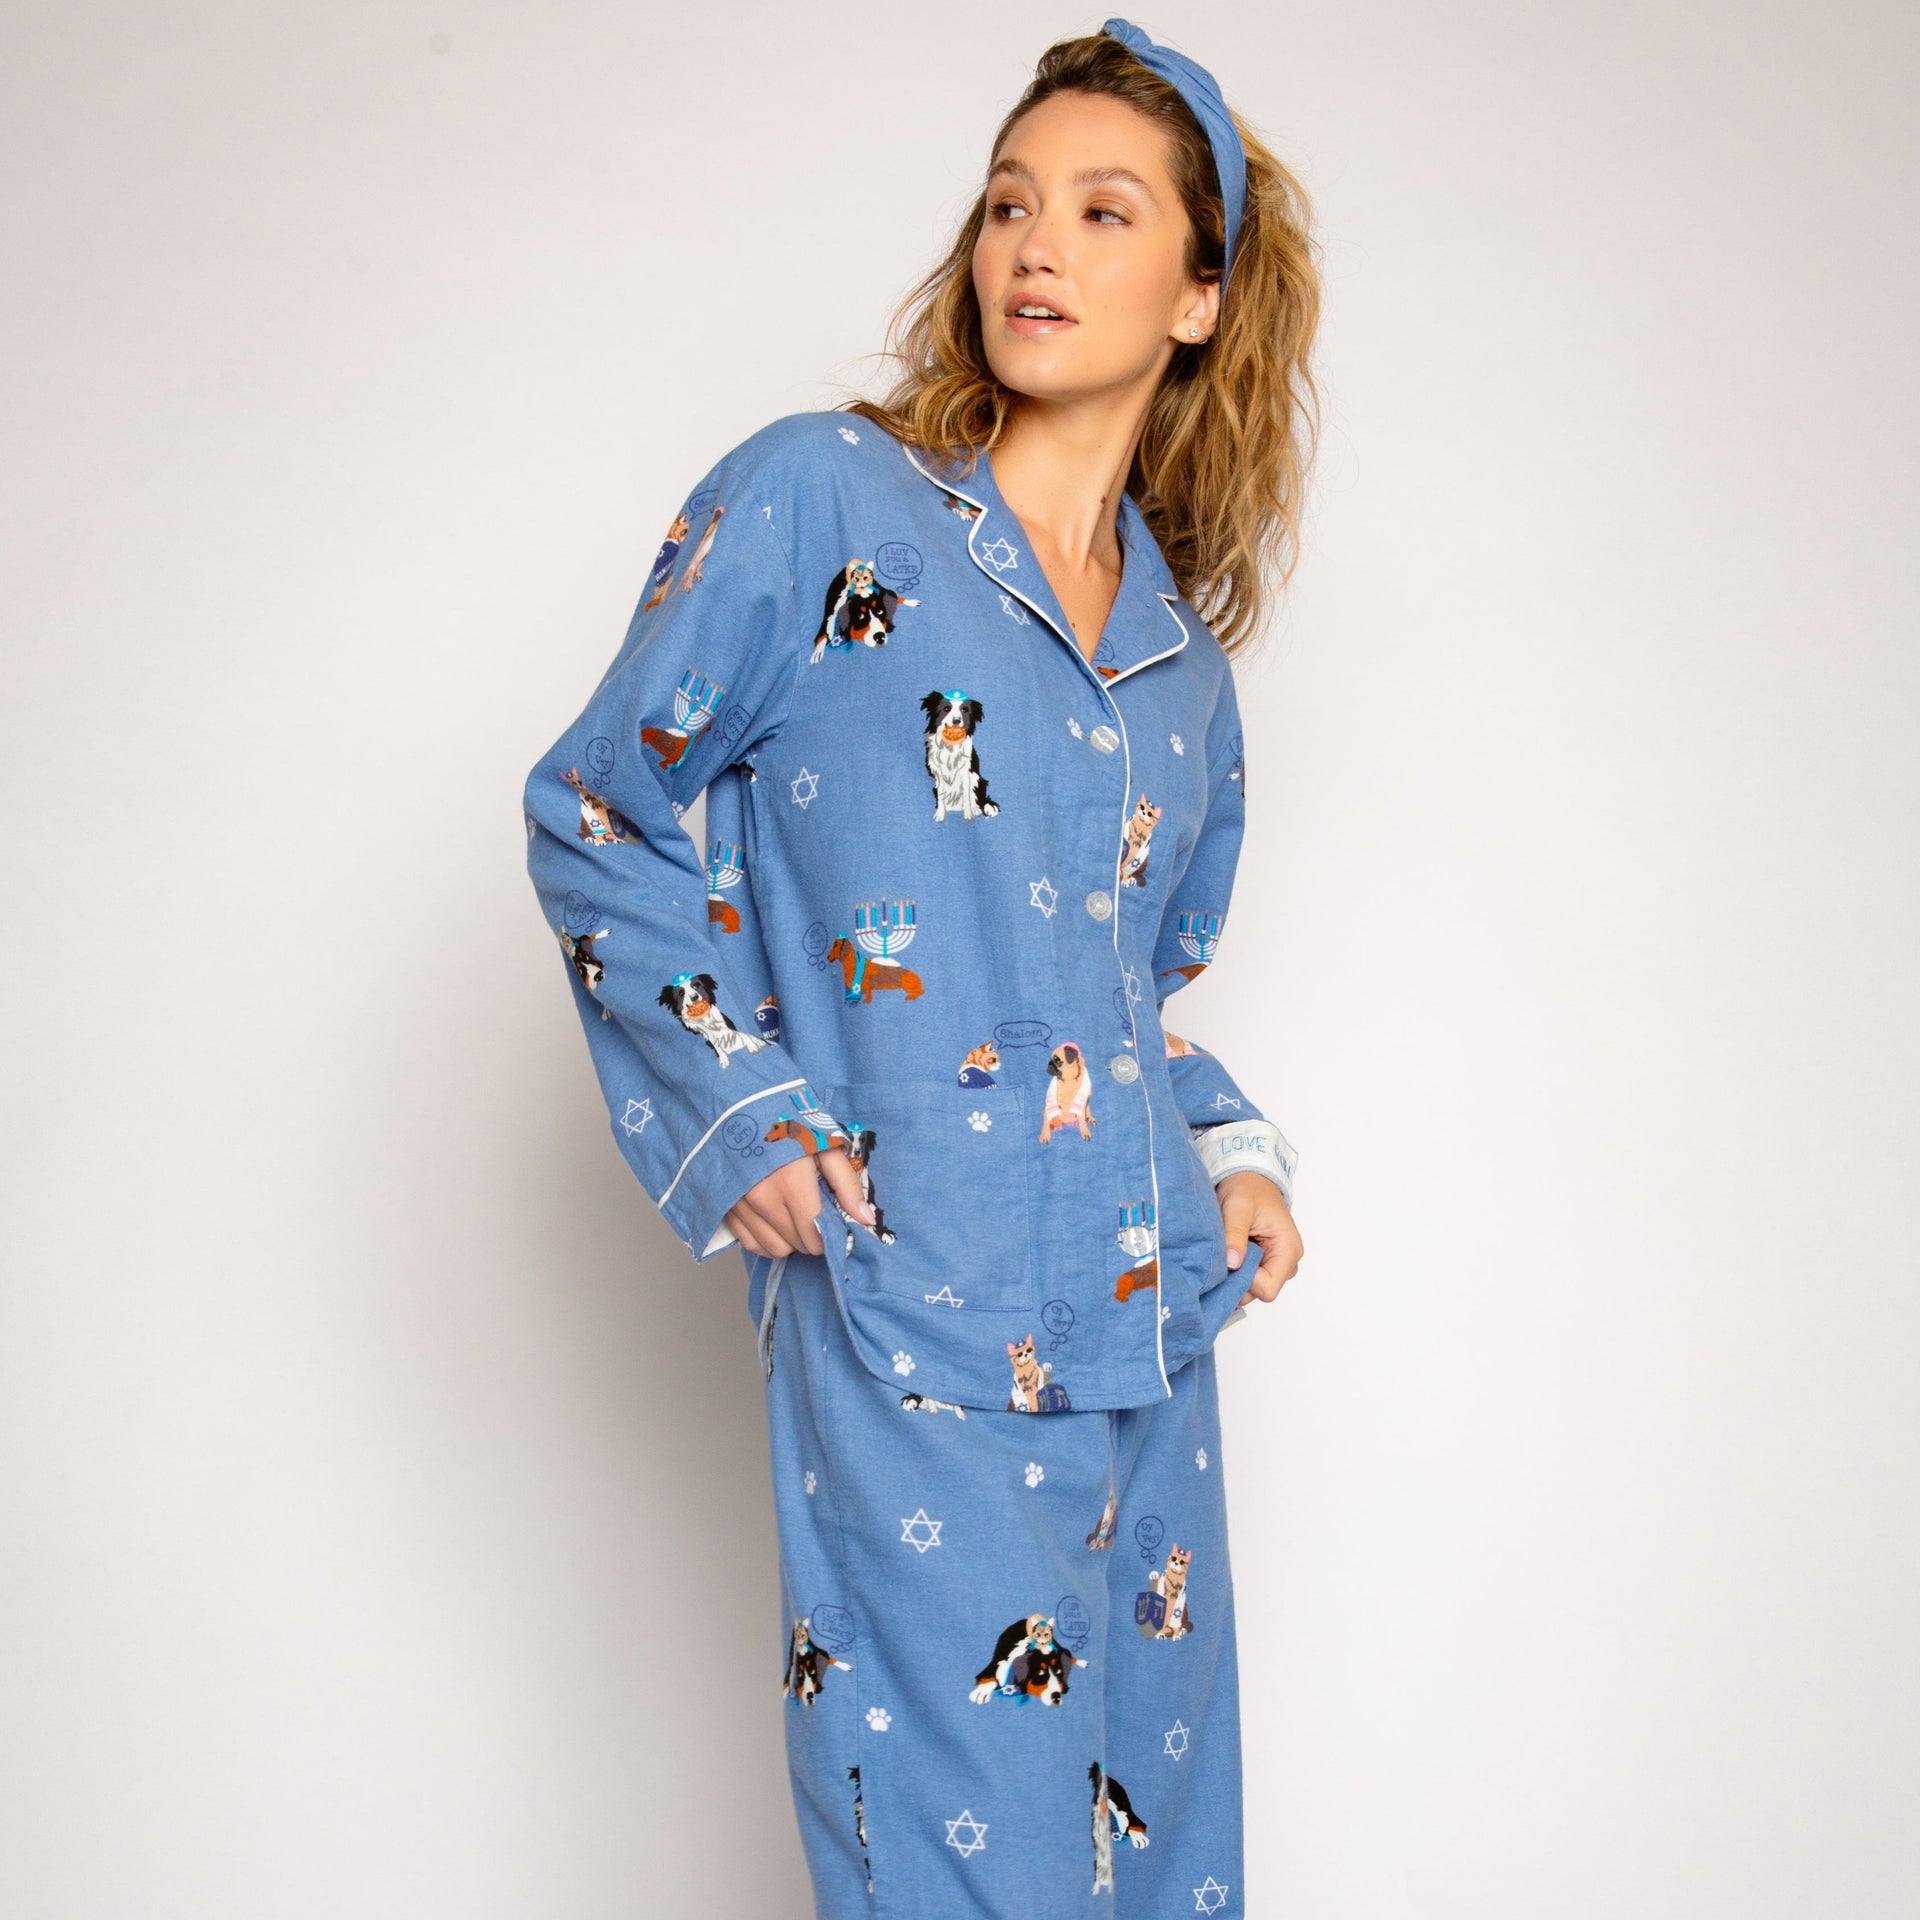 Love You a Latke Pajamas Set by P.J. Salvage - (Sizes XS - XL)